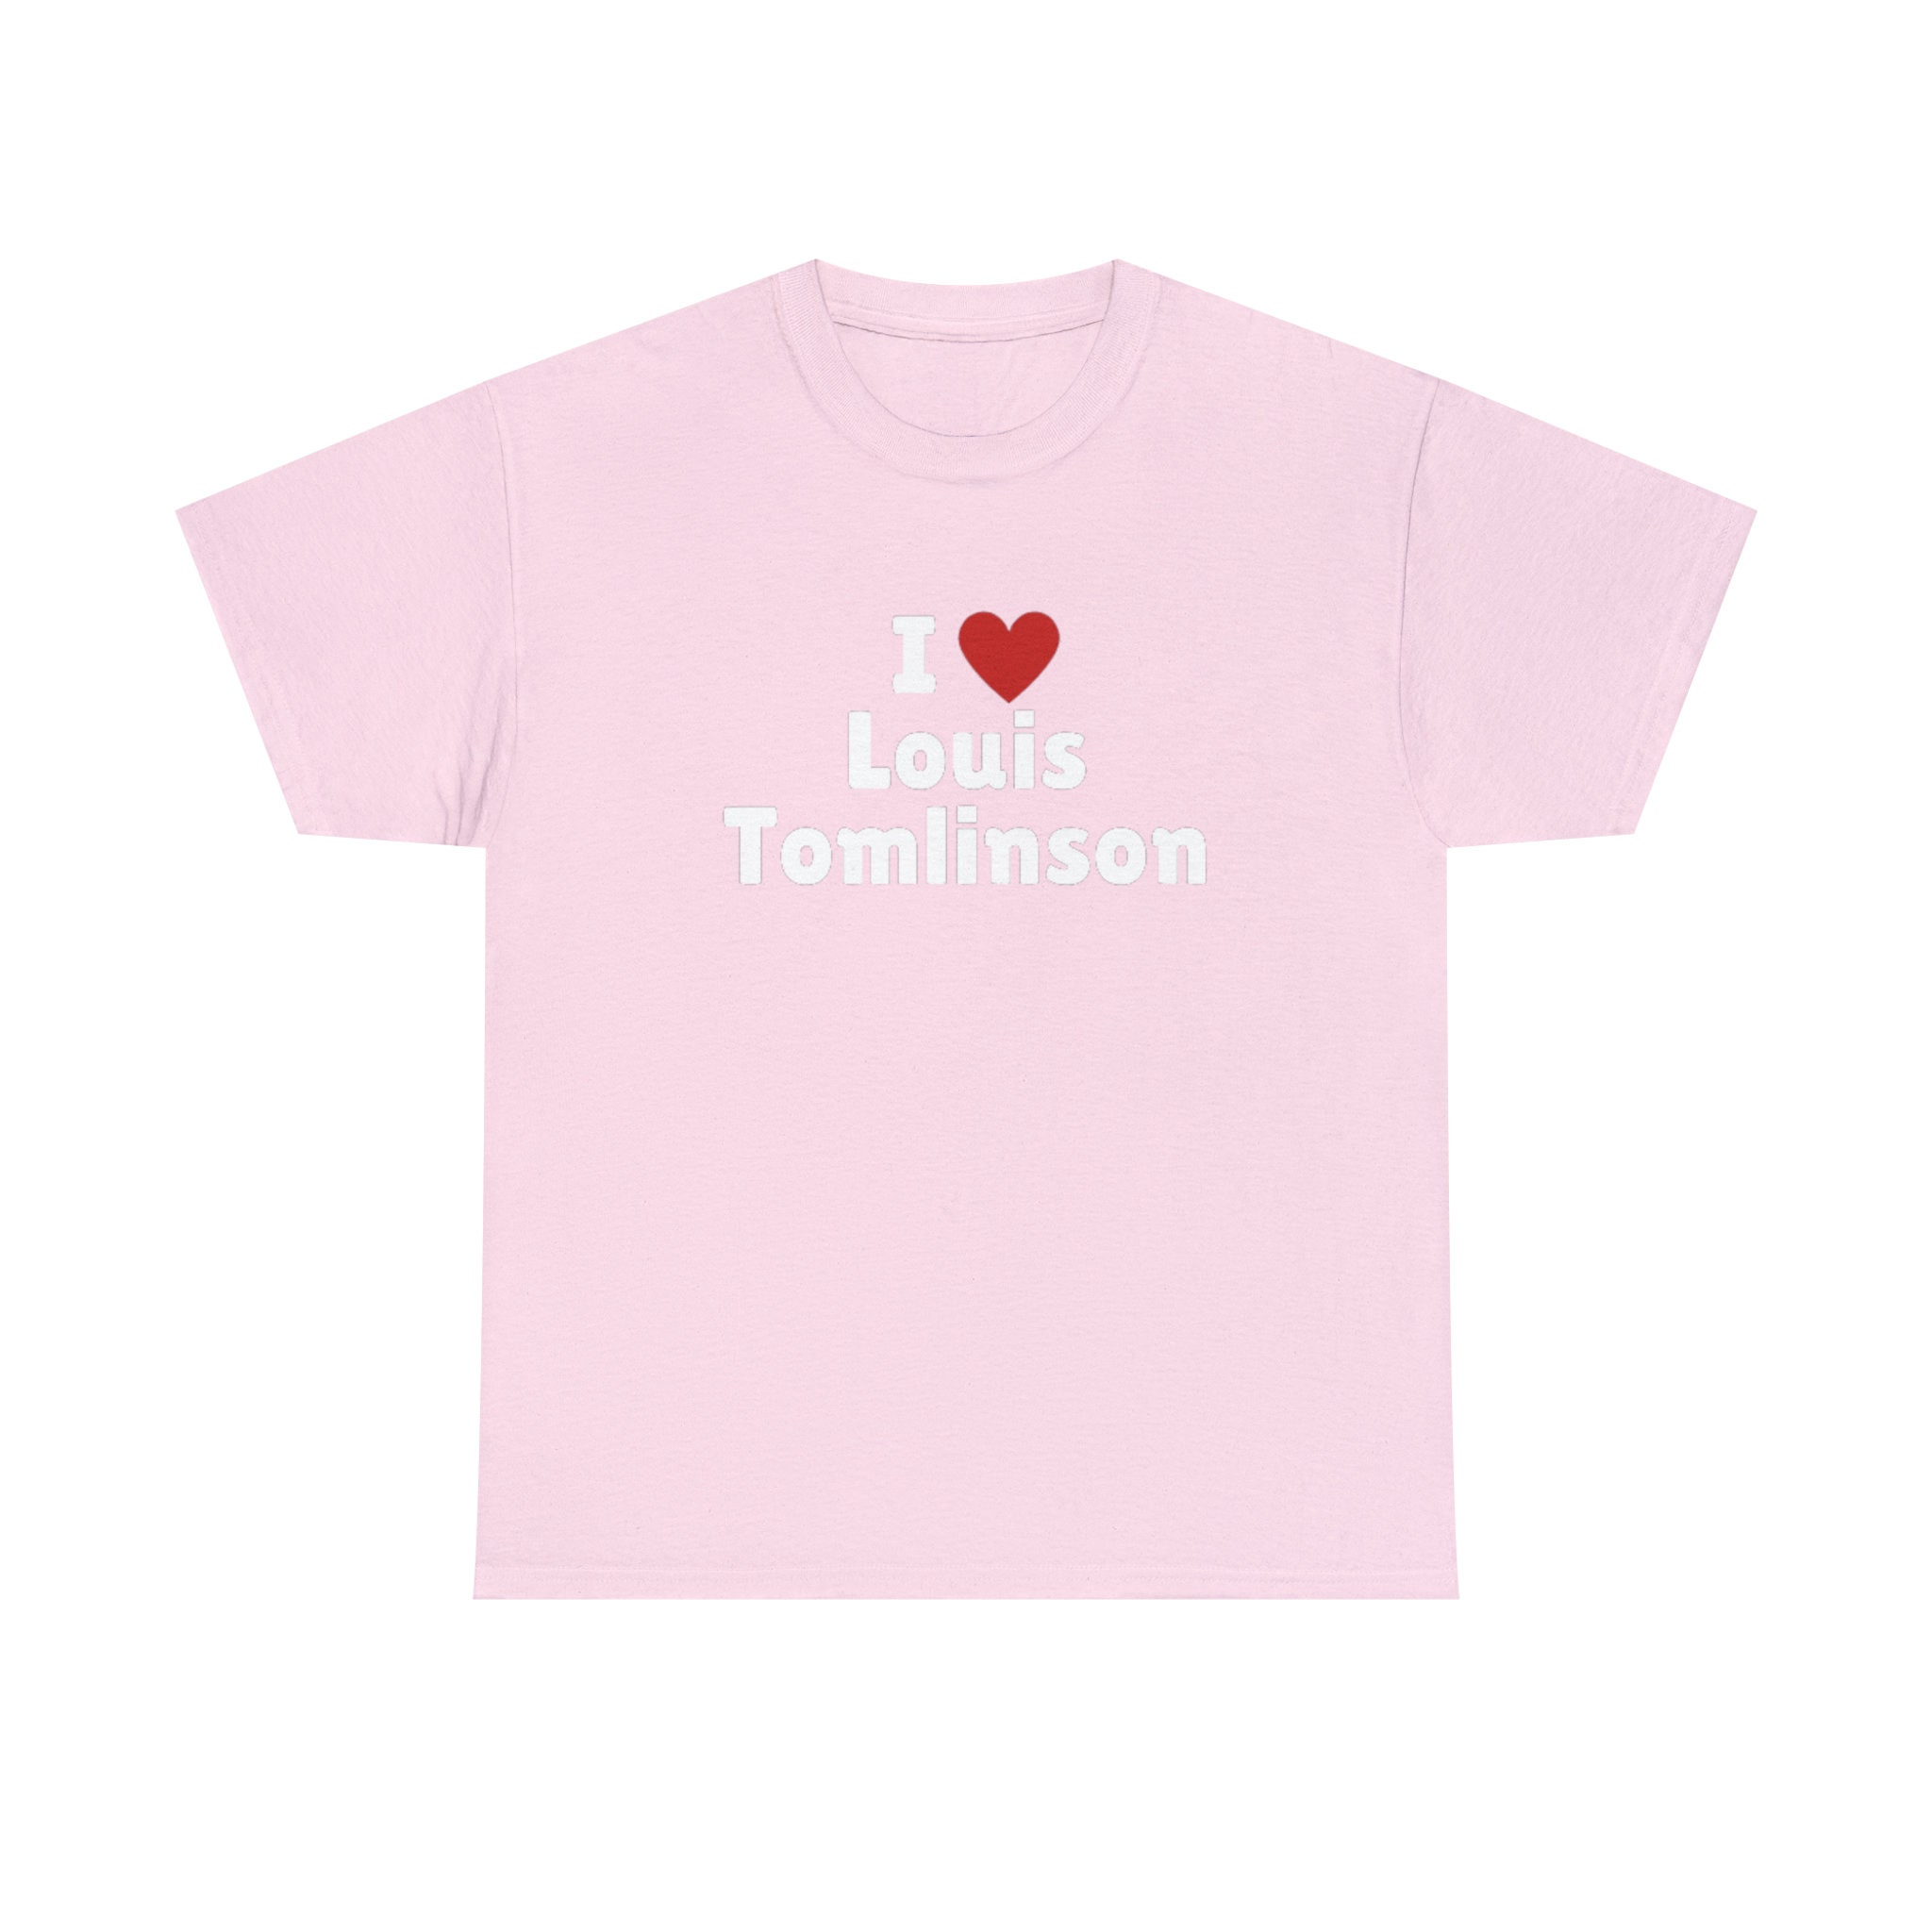 Louis Tomlinson Signature Women T-Shirt Tee, Light Pink / XL